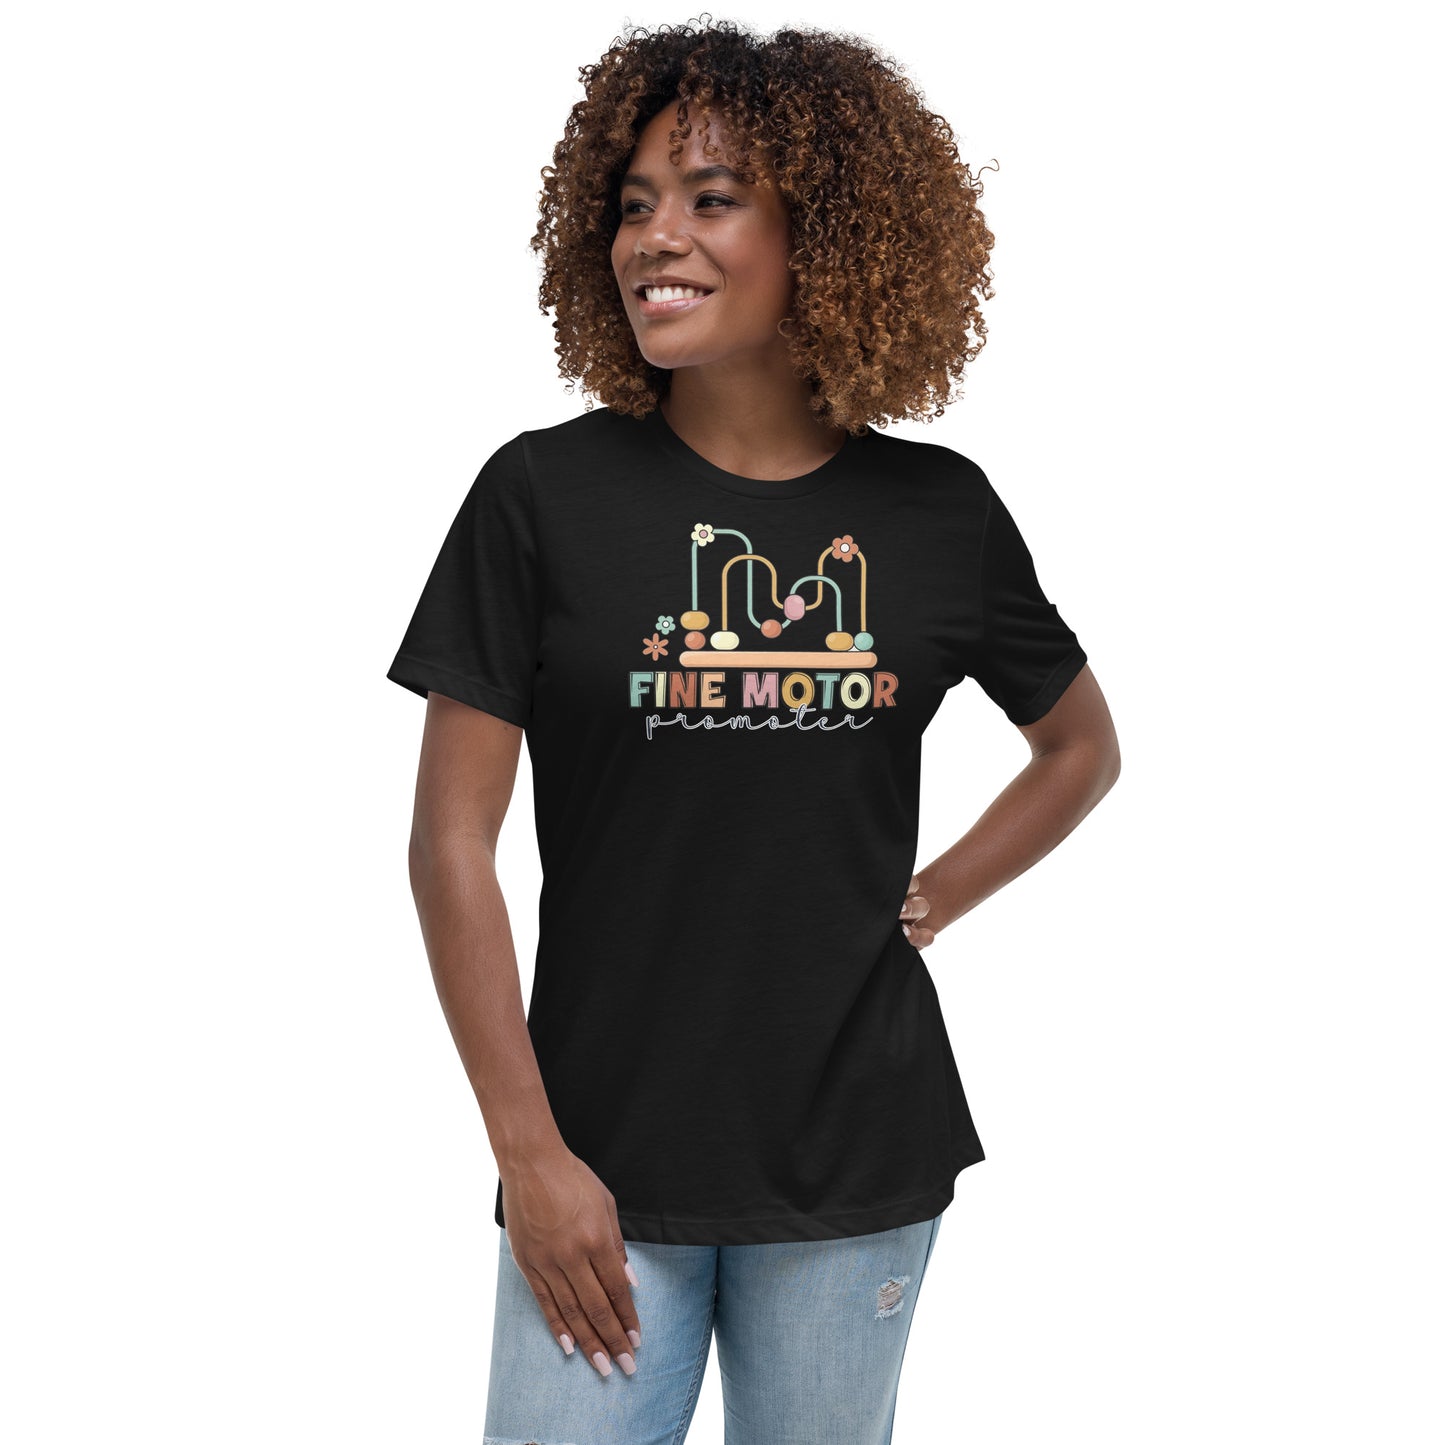 Fine Motor Promoter - Women’s T-shirt